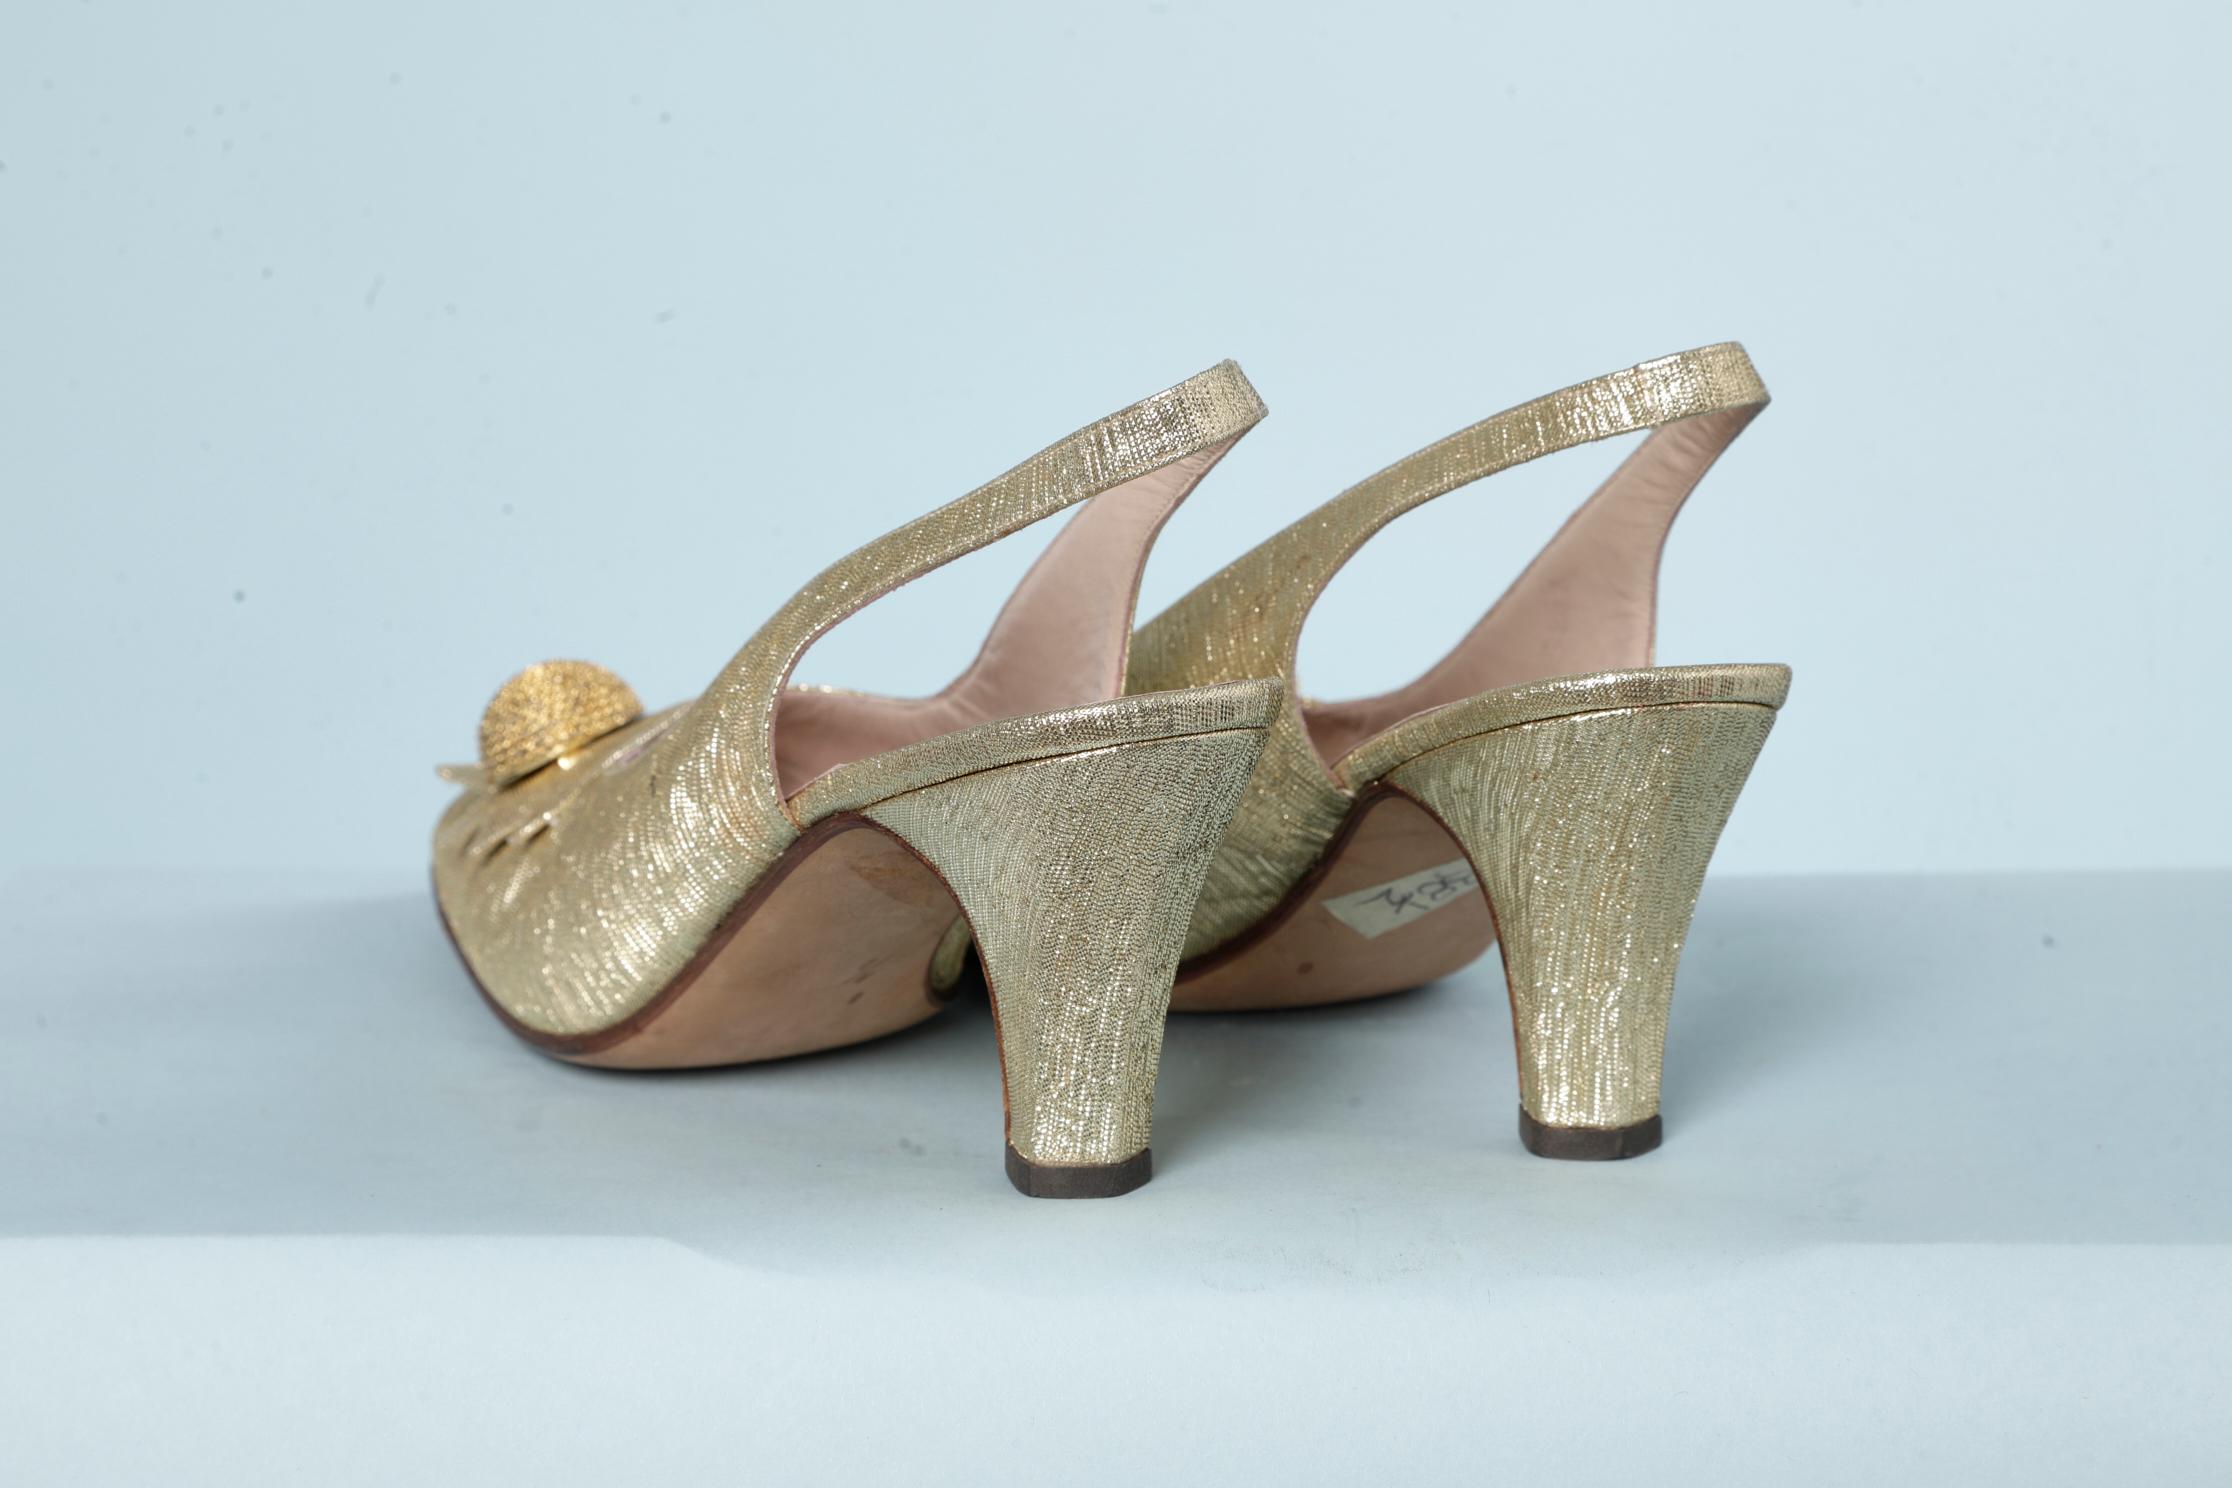 1960s women's shoes